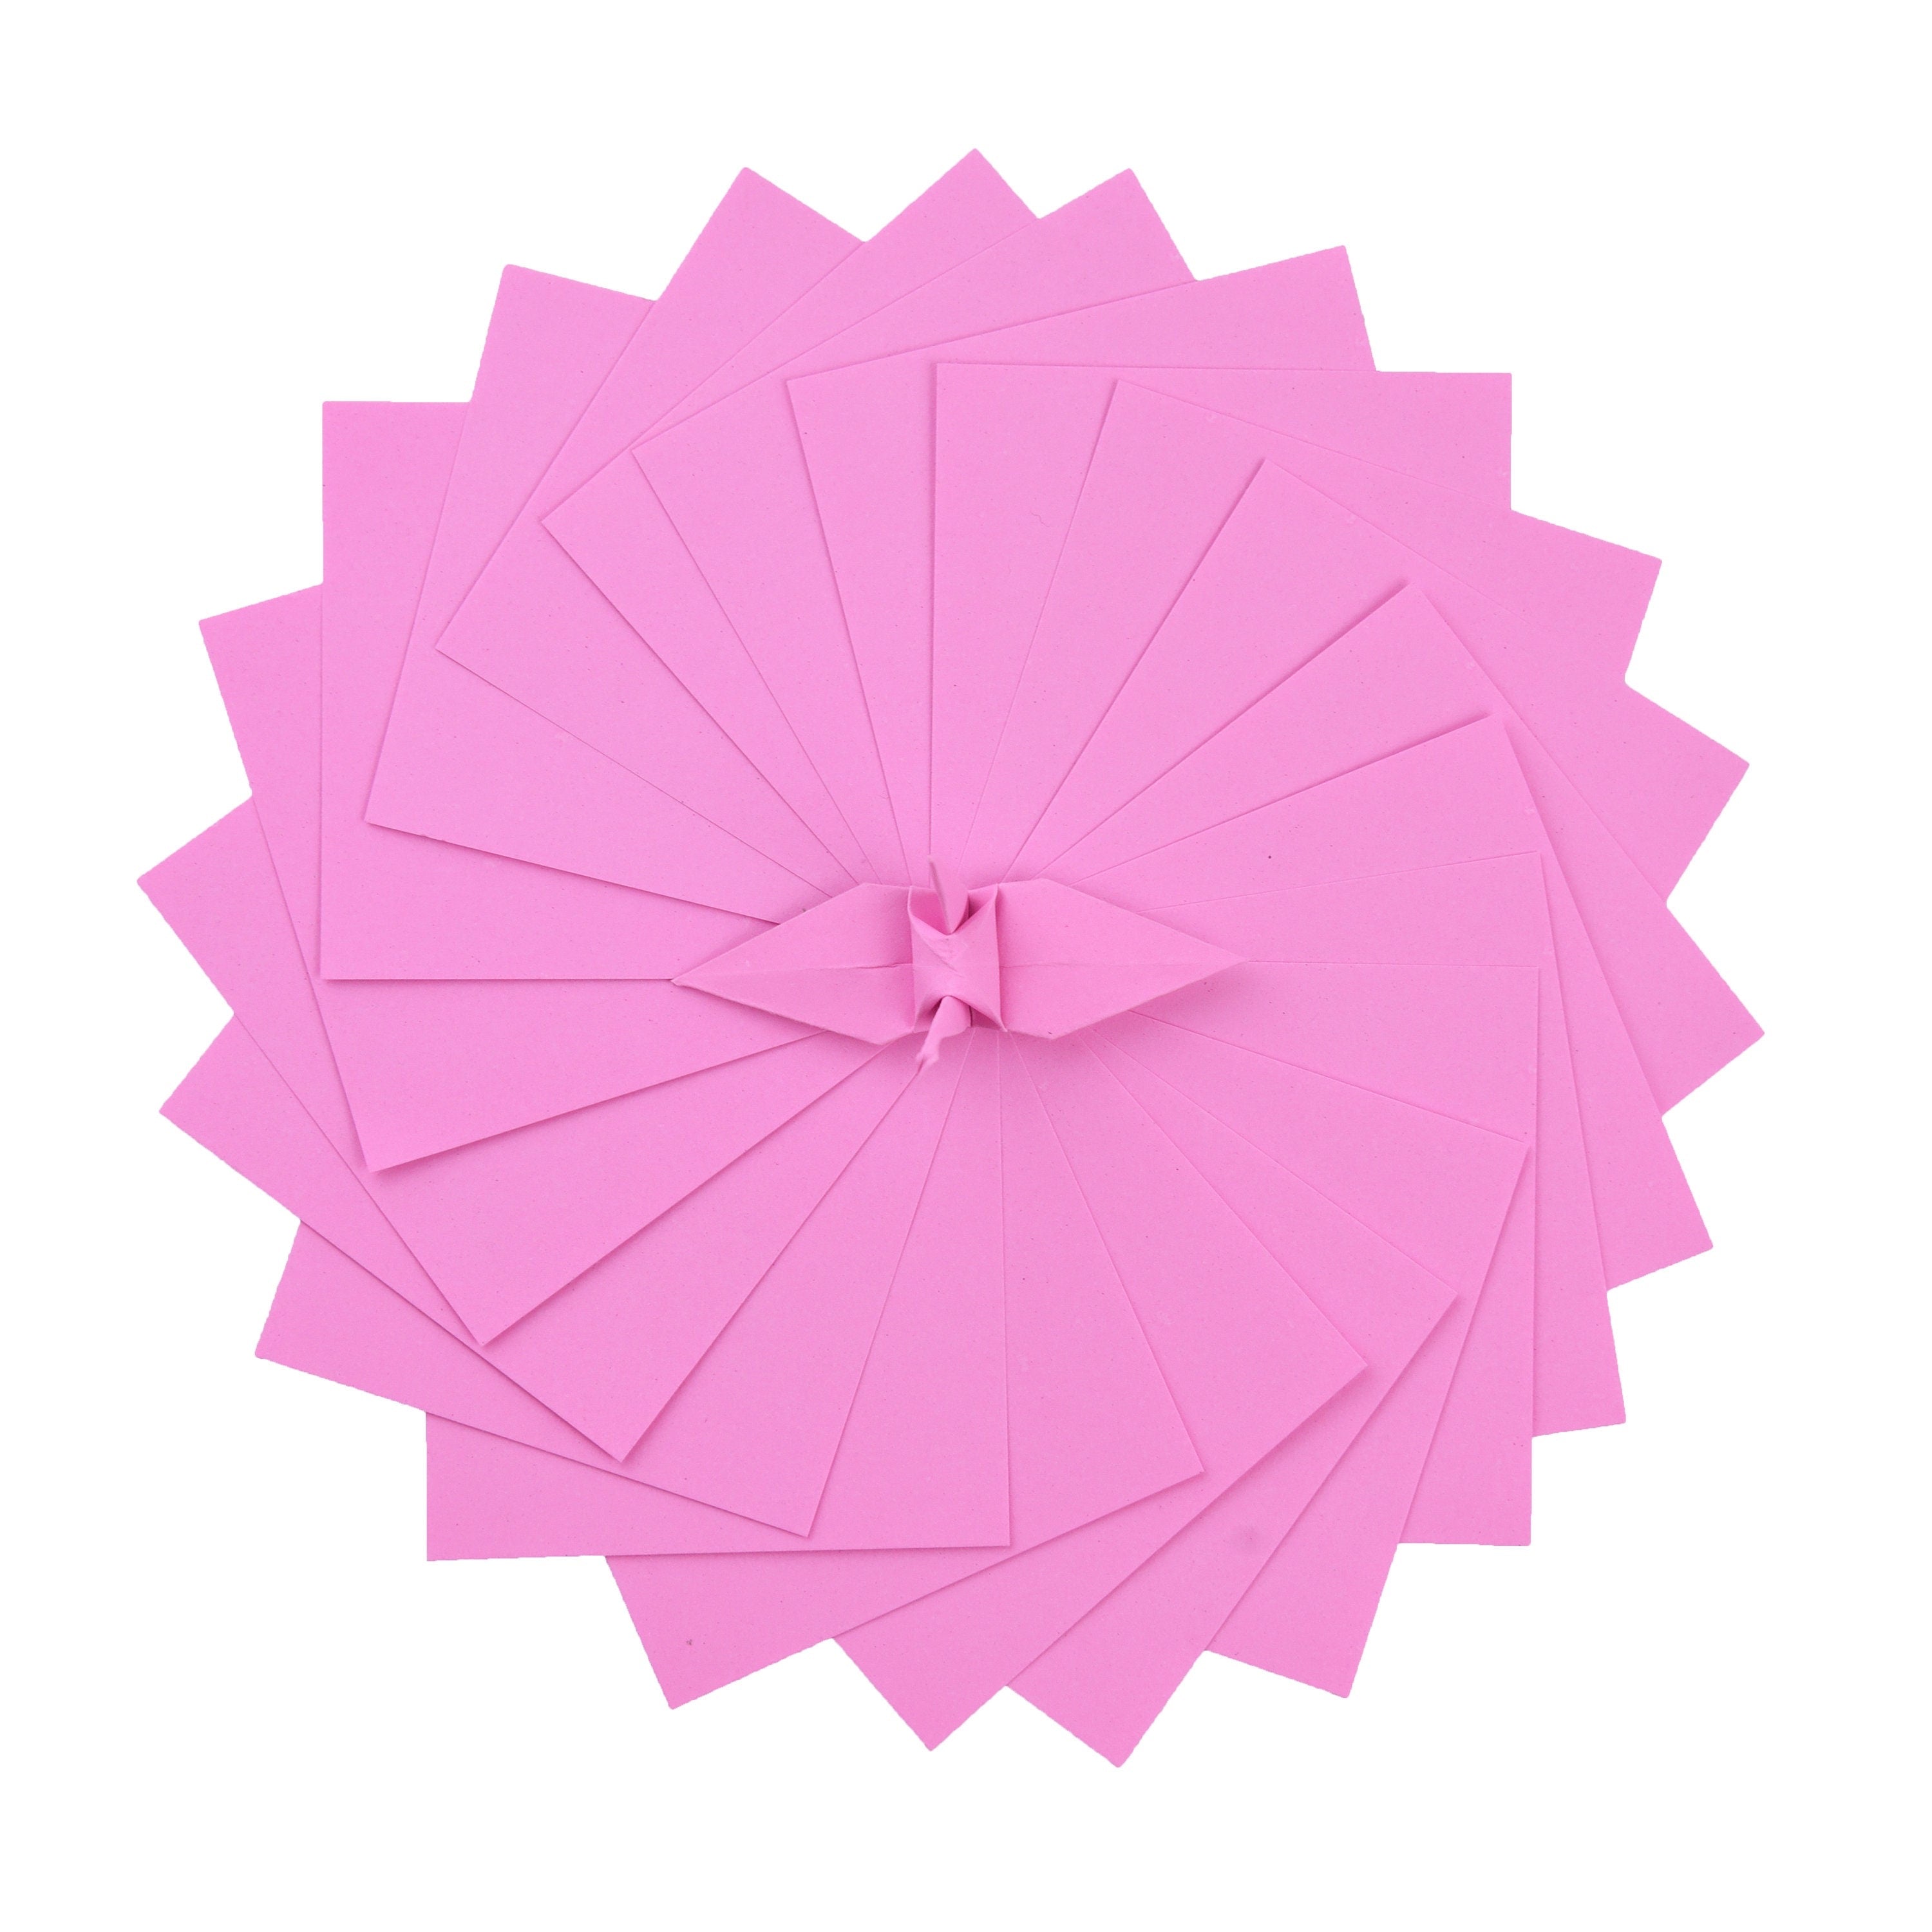 100 fogli di carta origami - 3x3 pollici - Confezione di carta quadrata per piegare, gru origami e decorazioni - S13